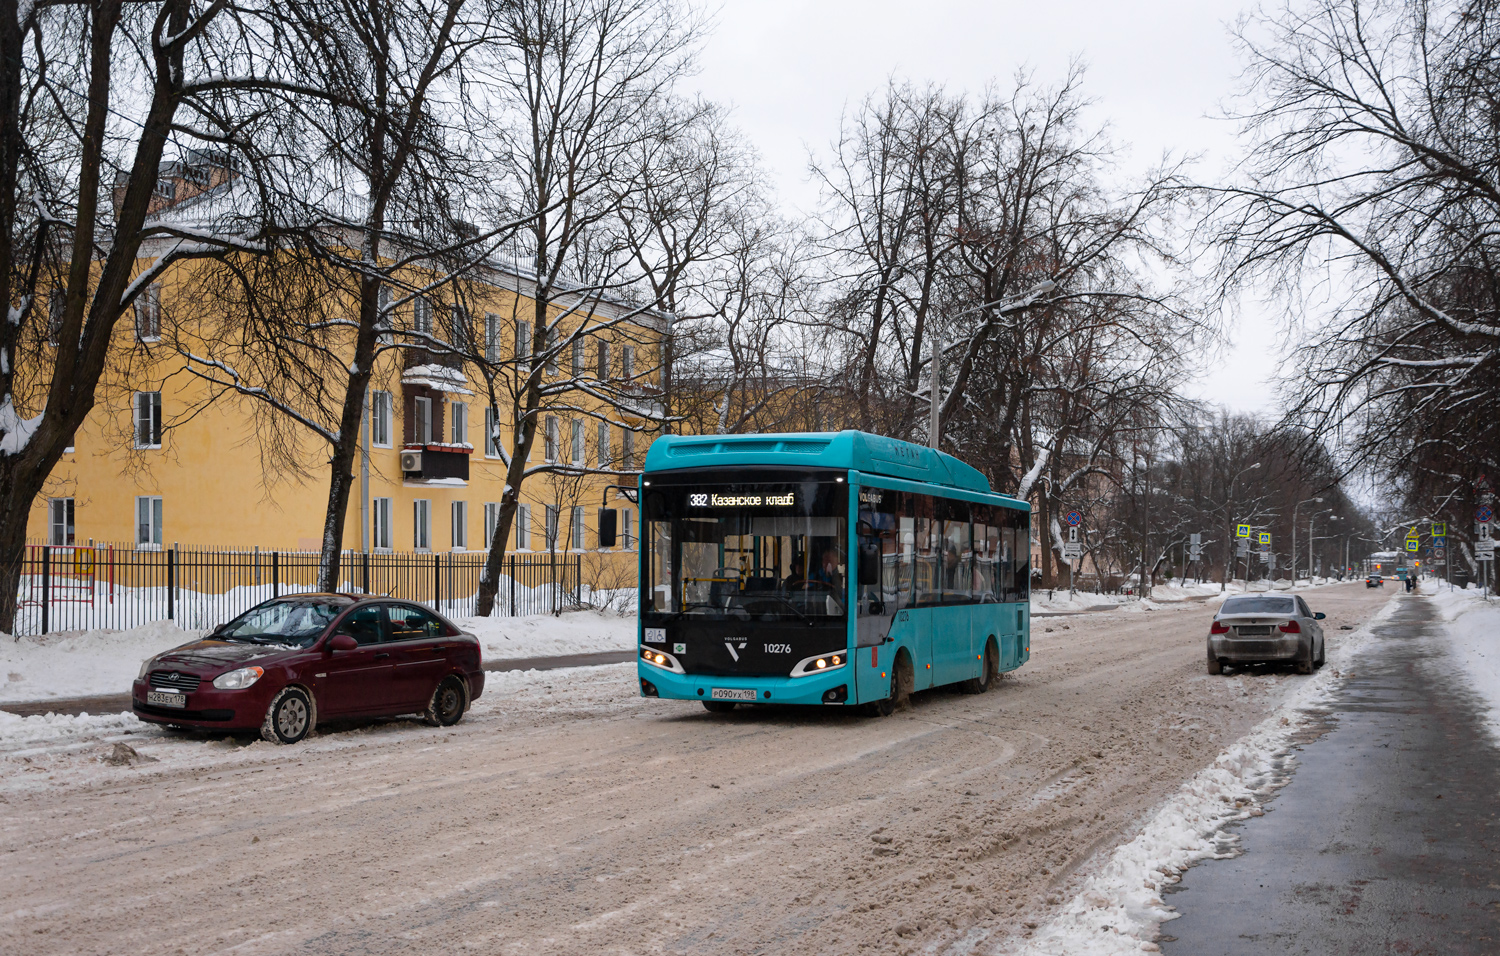 Saint Petersburg, Volgabus-4298.G4 (CNG) č. 10276